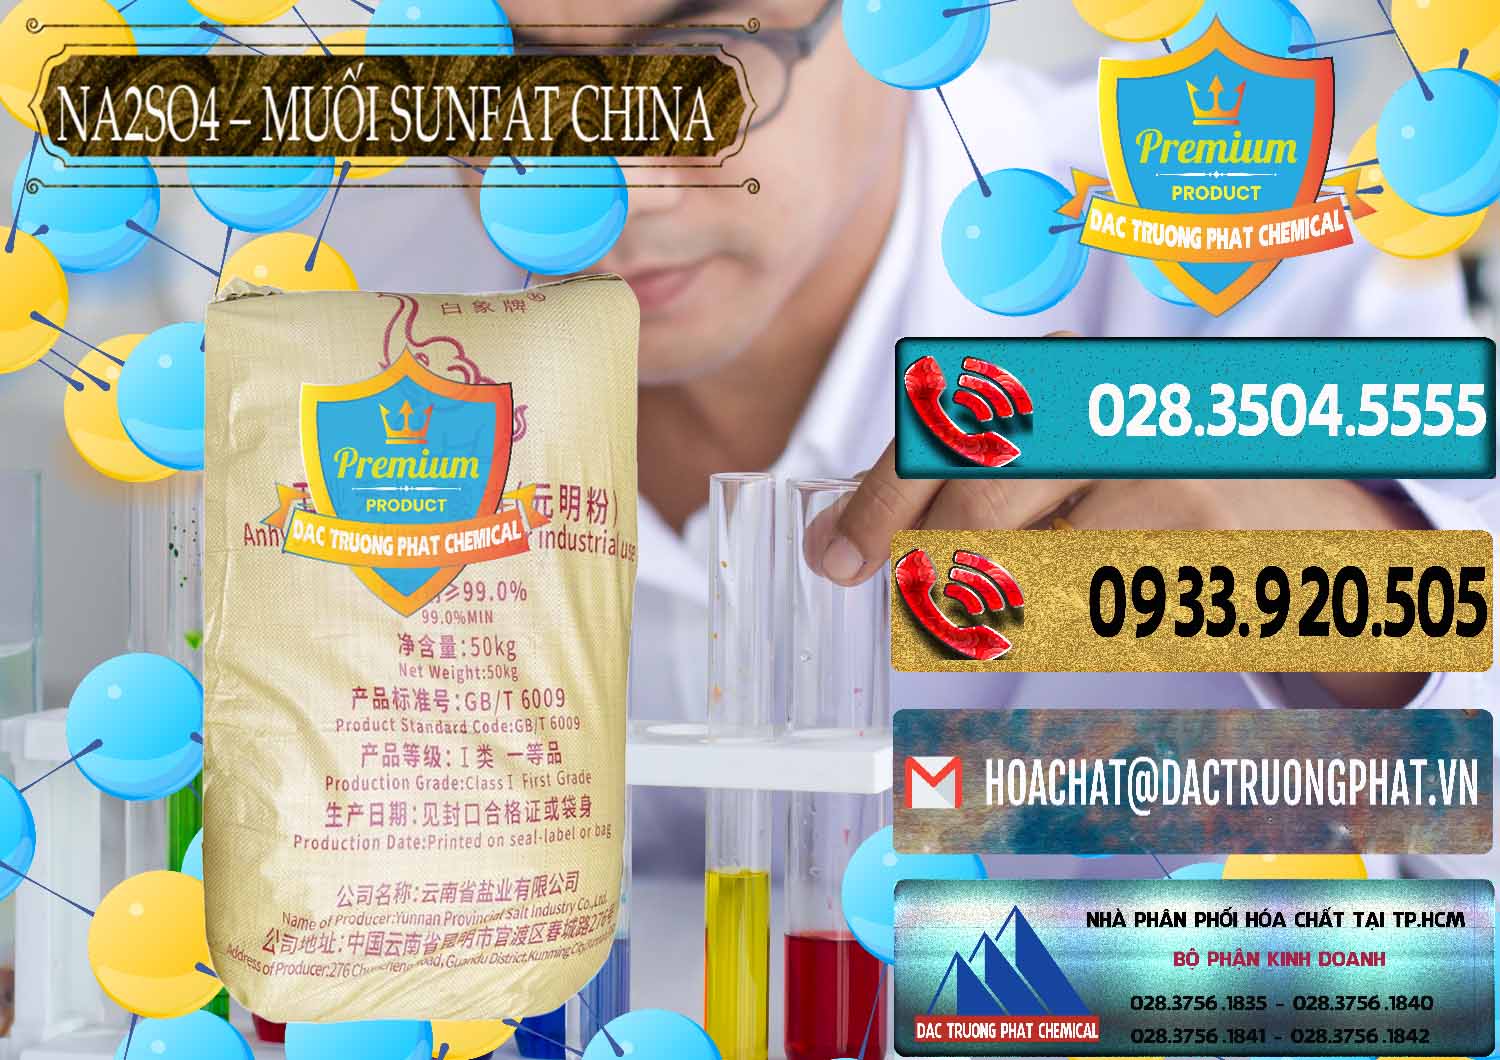 Đơn vị chuyên nhập khẩu _ bán Sodium Sulphate - Muối Sunfat Na2SO4 Logo Con Voi Trung Quốc China - 0409 - Cty chuyên cung cấp & bán hóa chất tại TP.HCM - hoachatdetnhuom.com